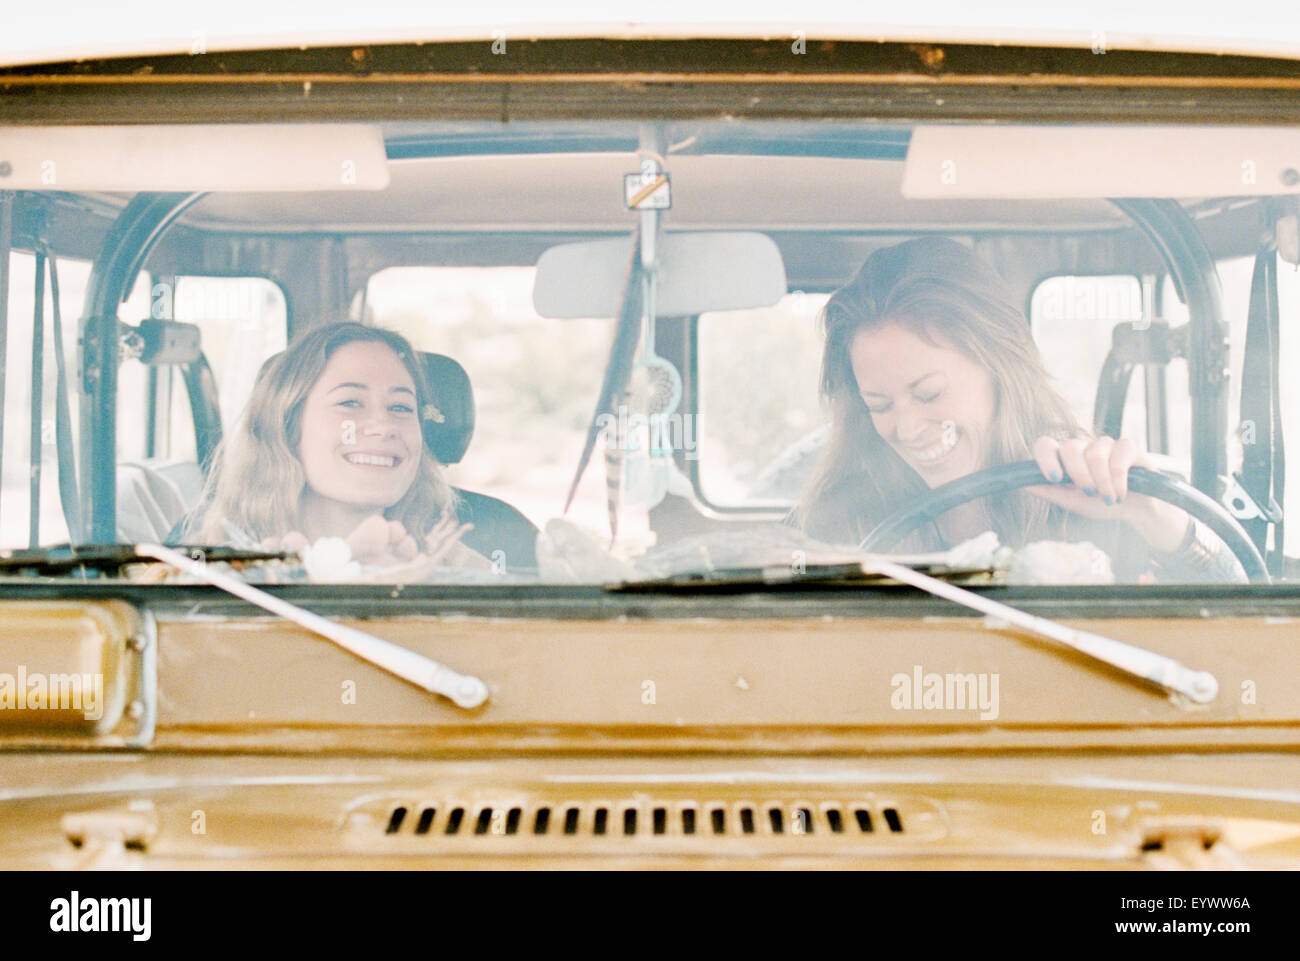 Deux femmes sur une sortie dans le désert, la conduite en 4x4. Banque D'Images